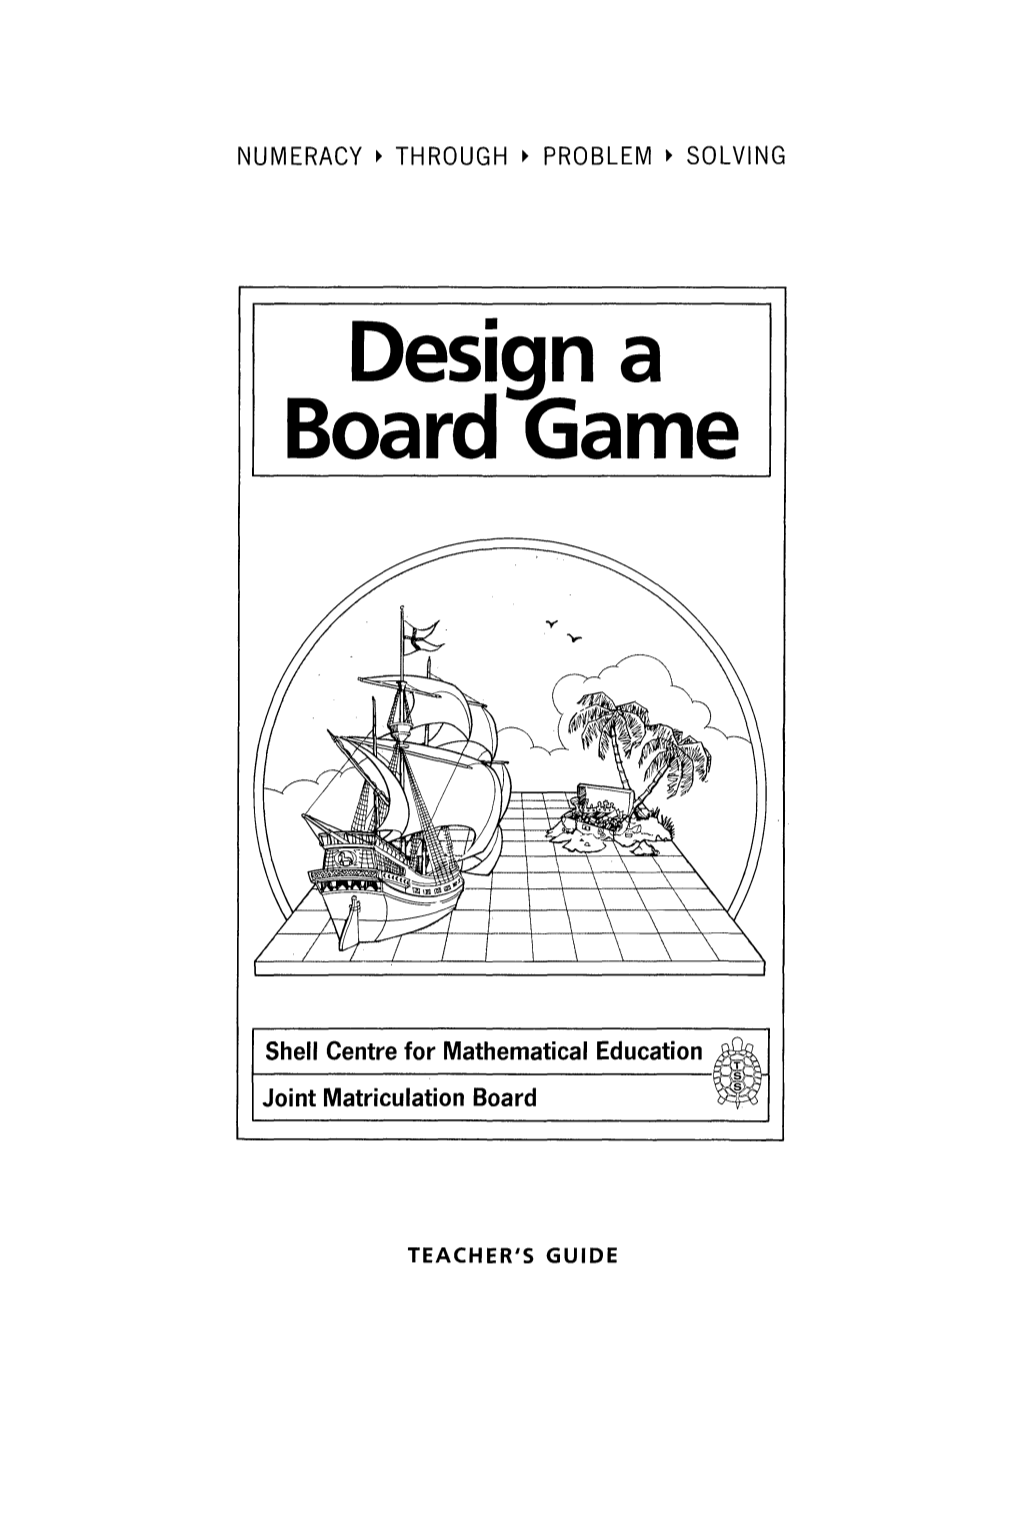 Design a Board Game